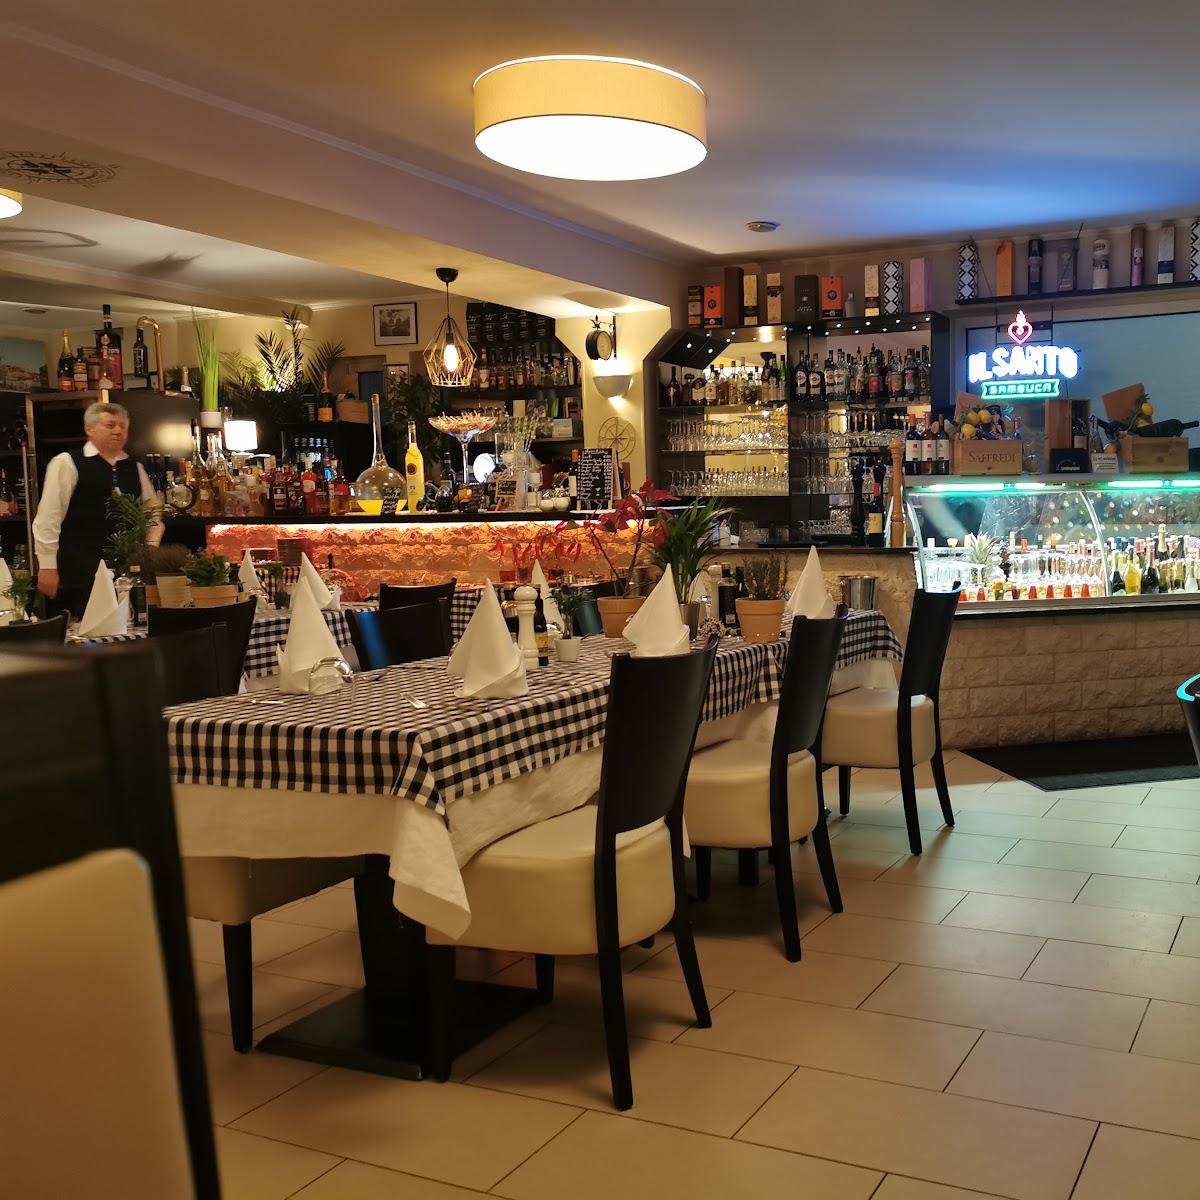 Restaurant "Osteria-del-sud" in Berlin